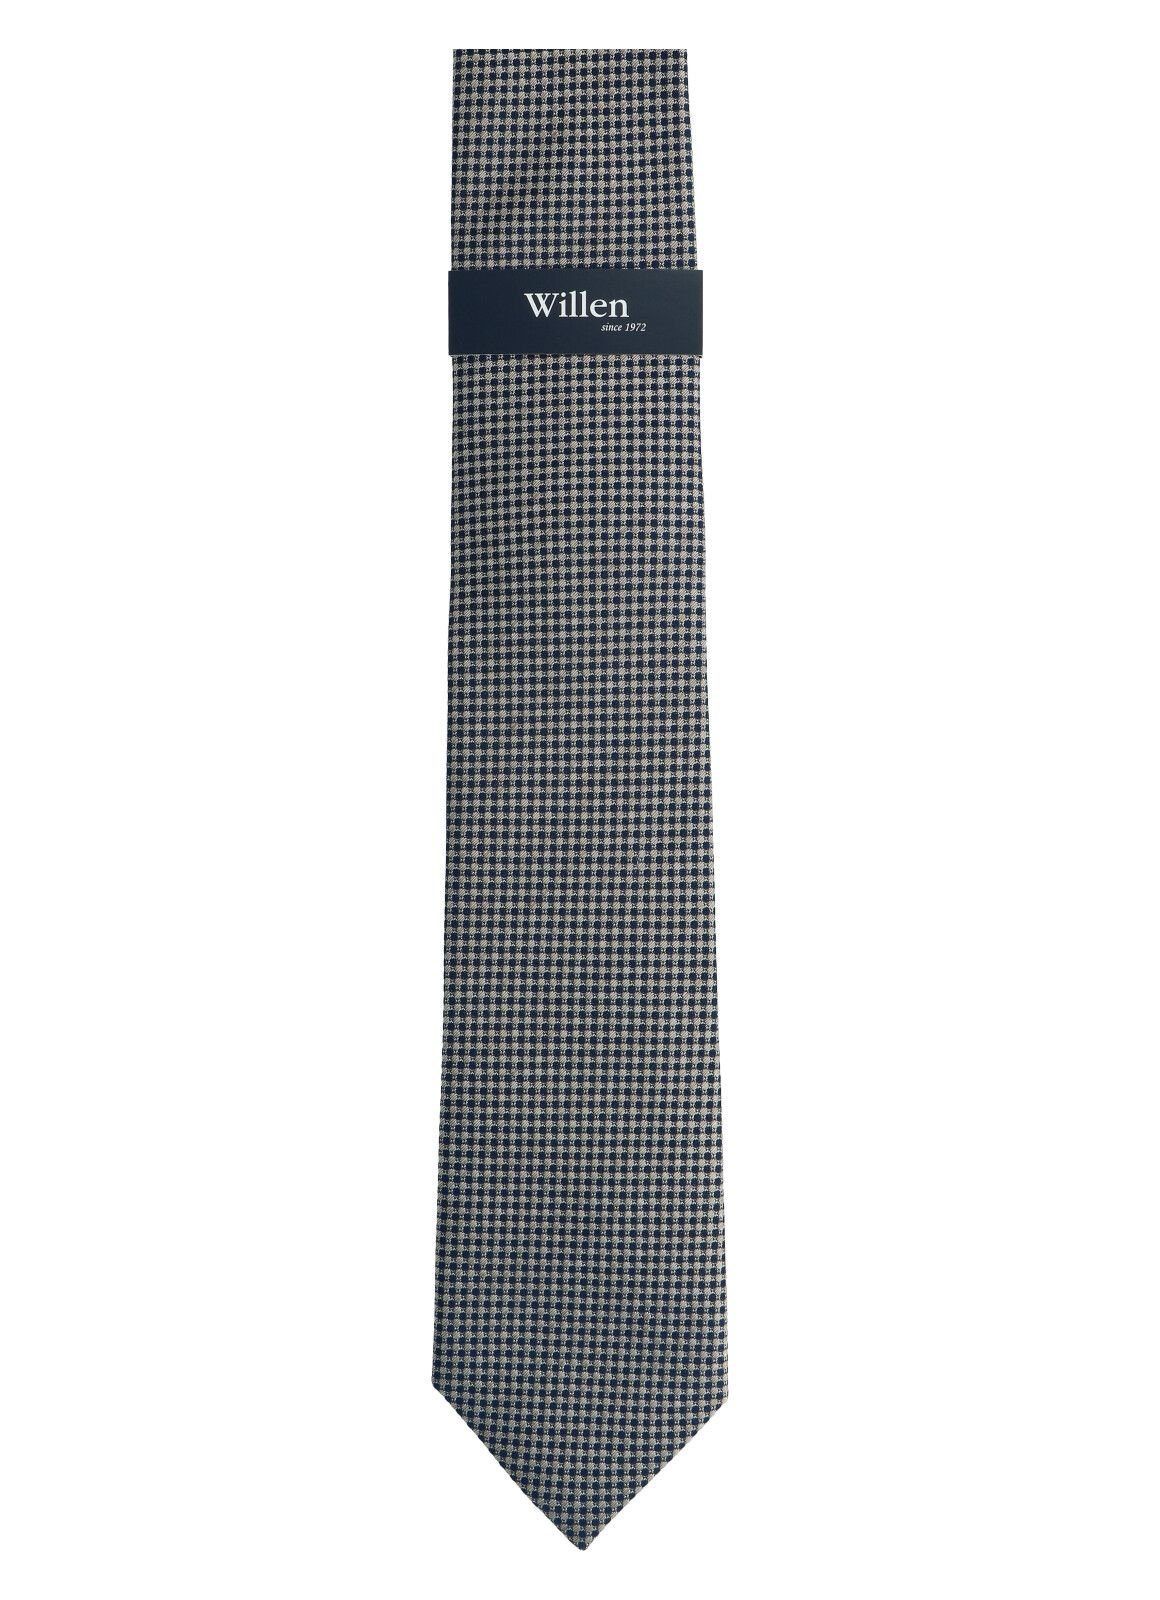 WILLEN stone Krawatte